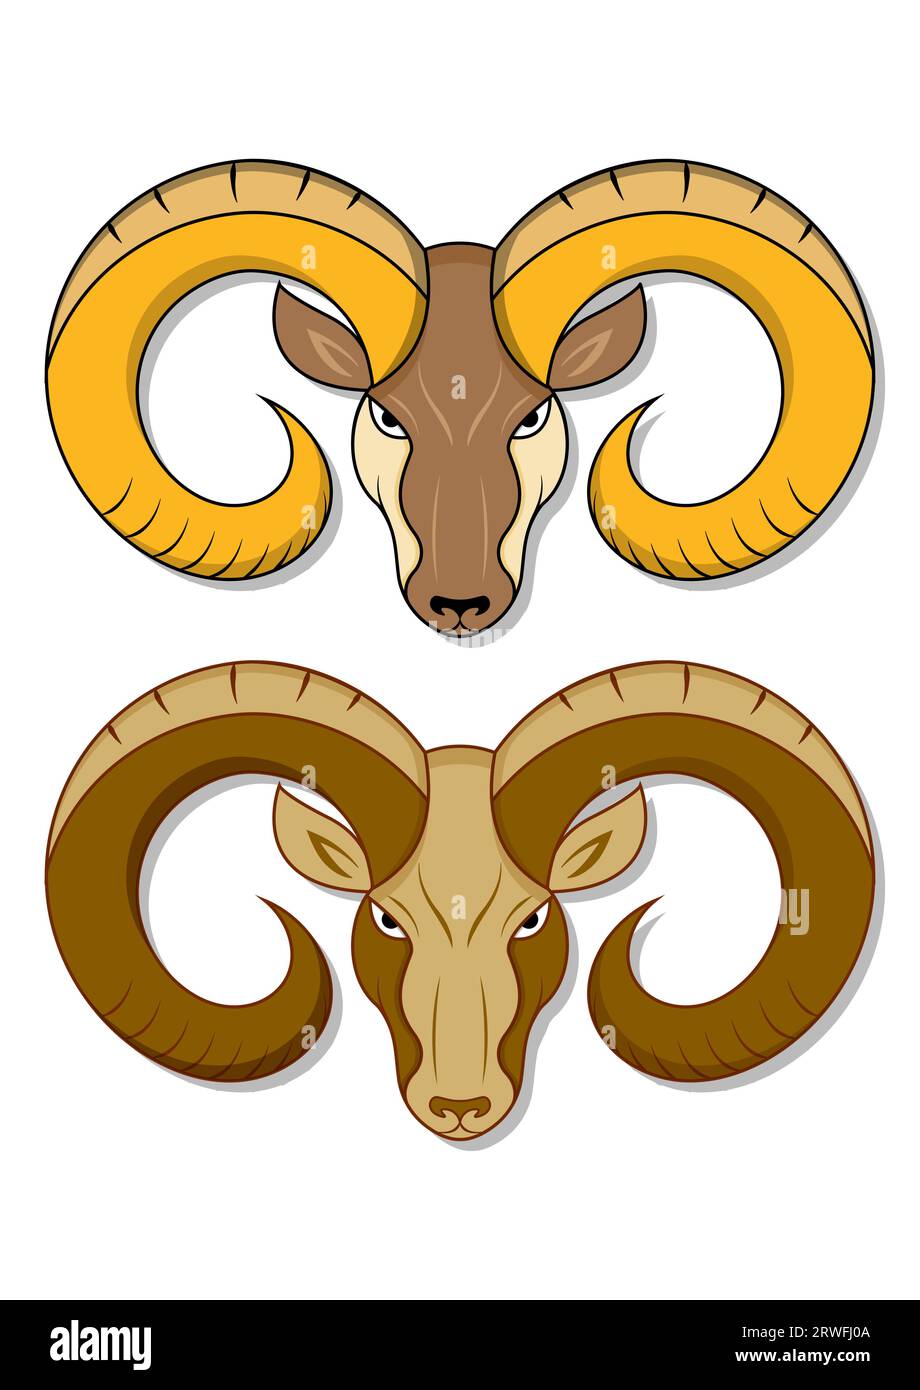 Testina RAM in due colori diversi. Bighorn Sheep RAM Vector Flat Design Illustrazione Vettoriale